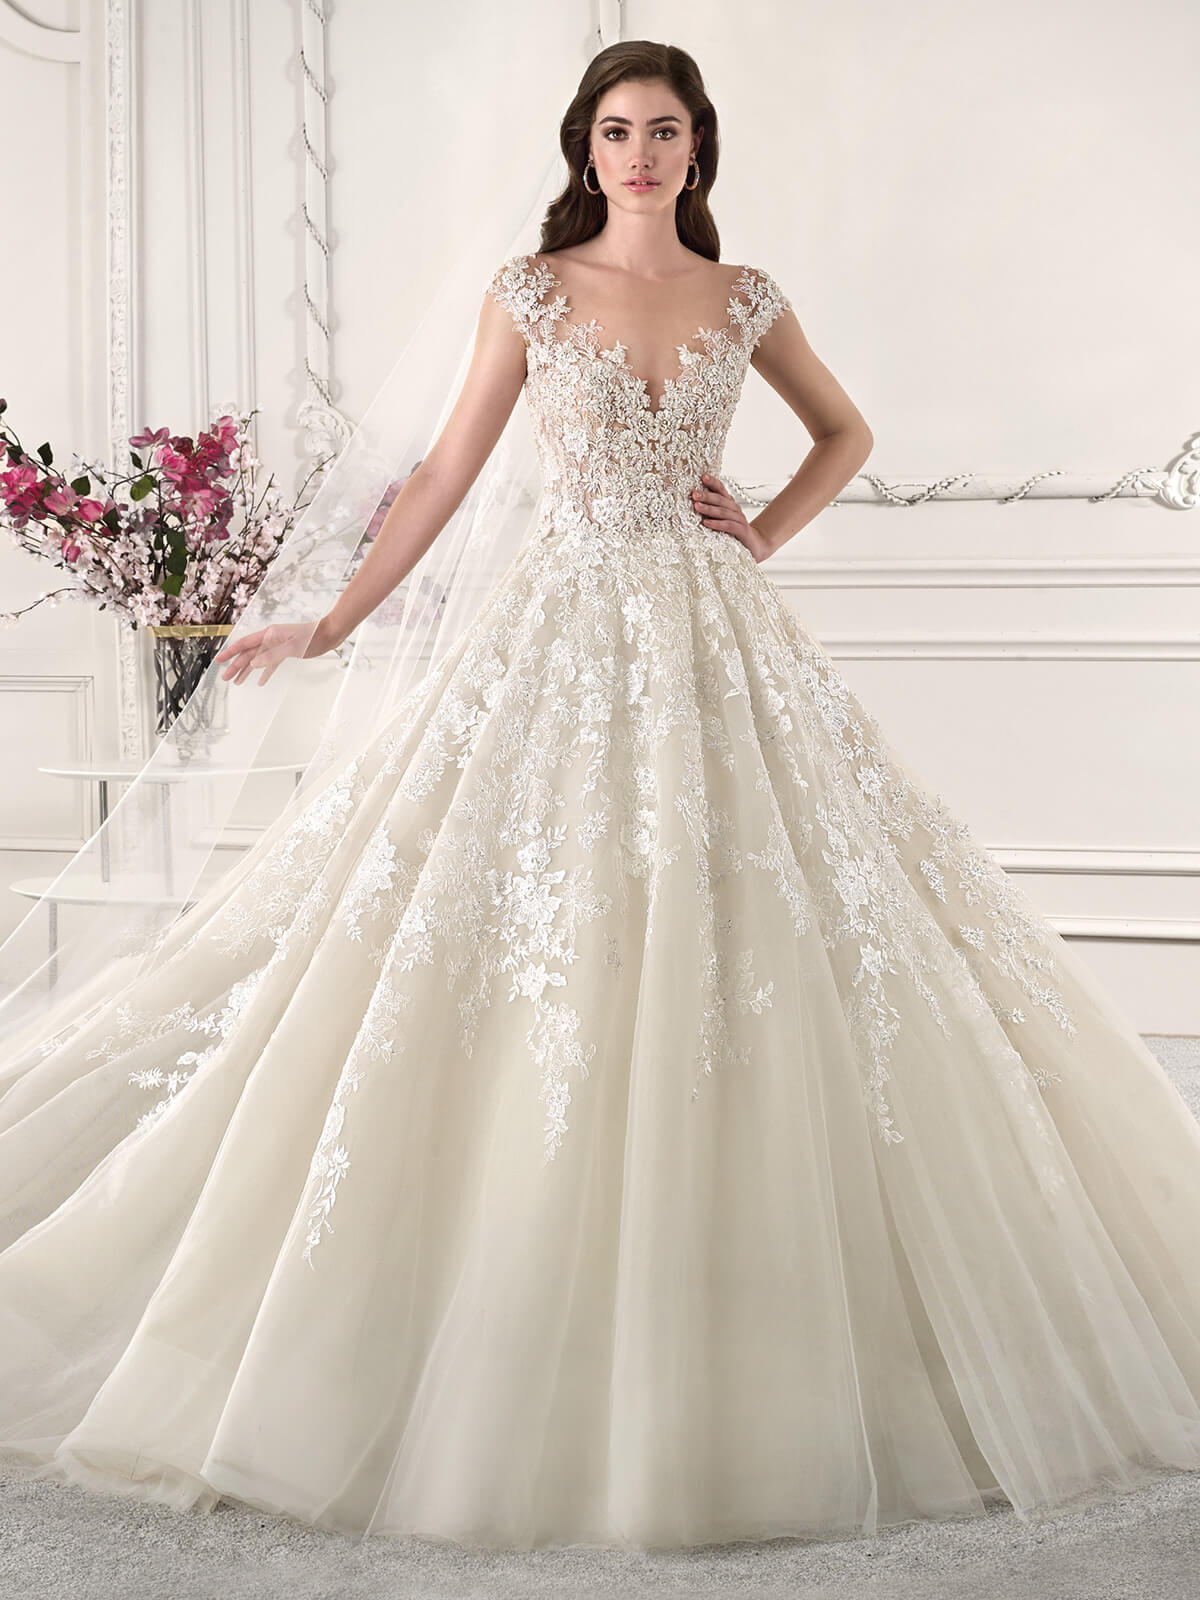 Vestido De Noiva Princesa: 105 Modelos Para Viver Um Conto De Fadas ...